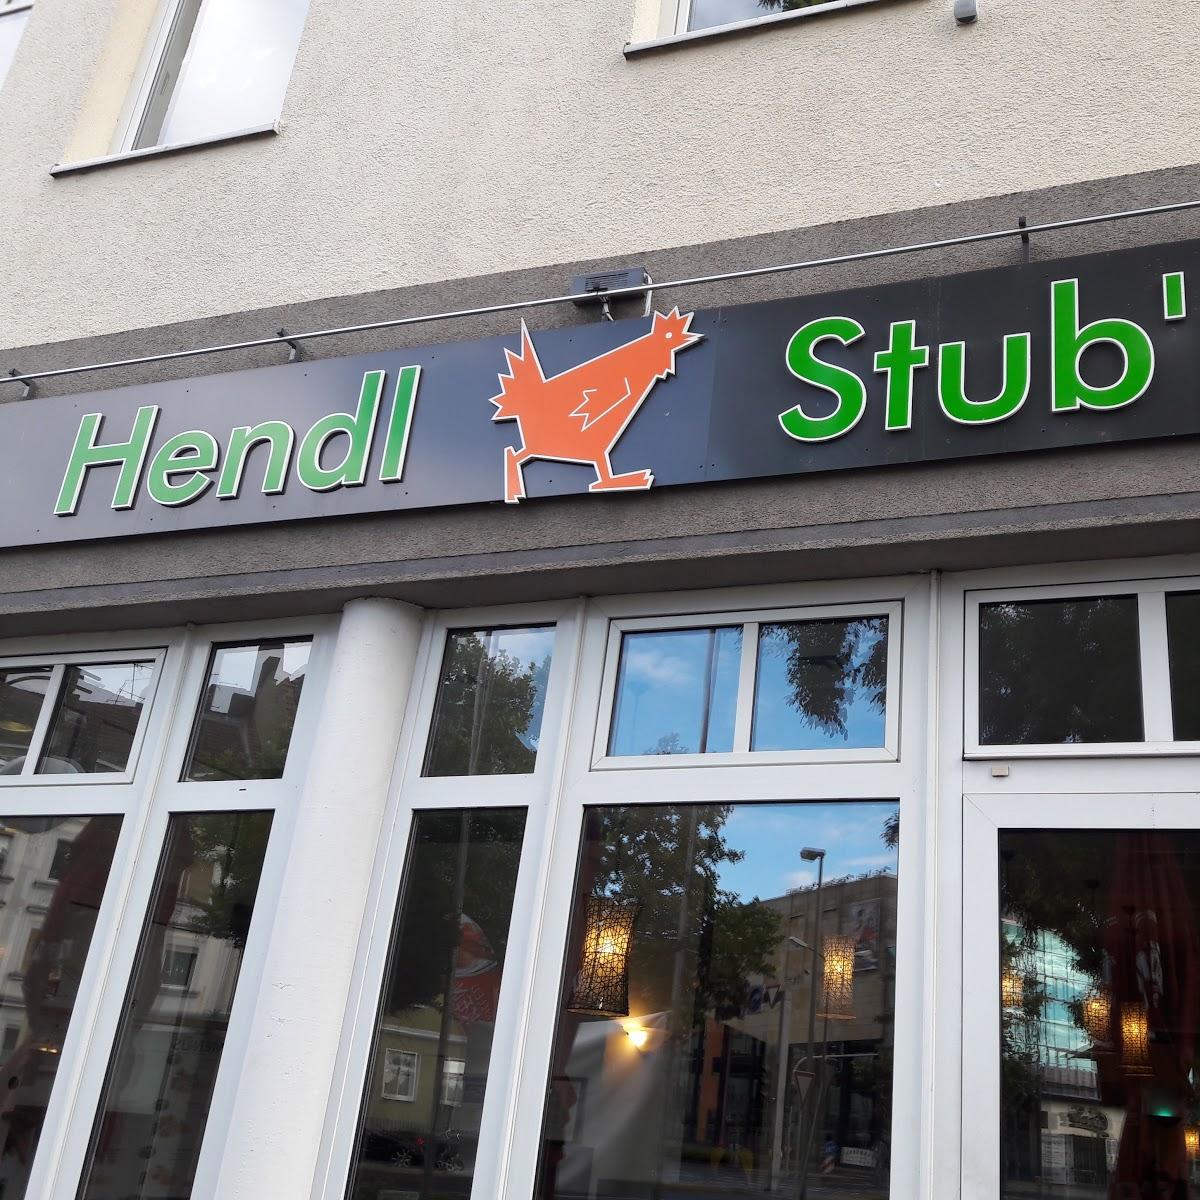 Restaurant "Restaurant Hendl Stubn Fulda" in  Fulda